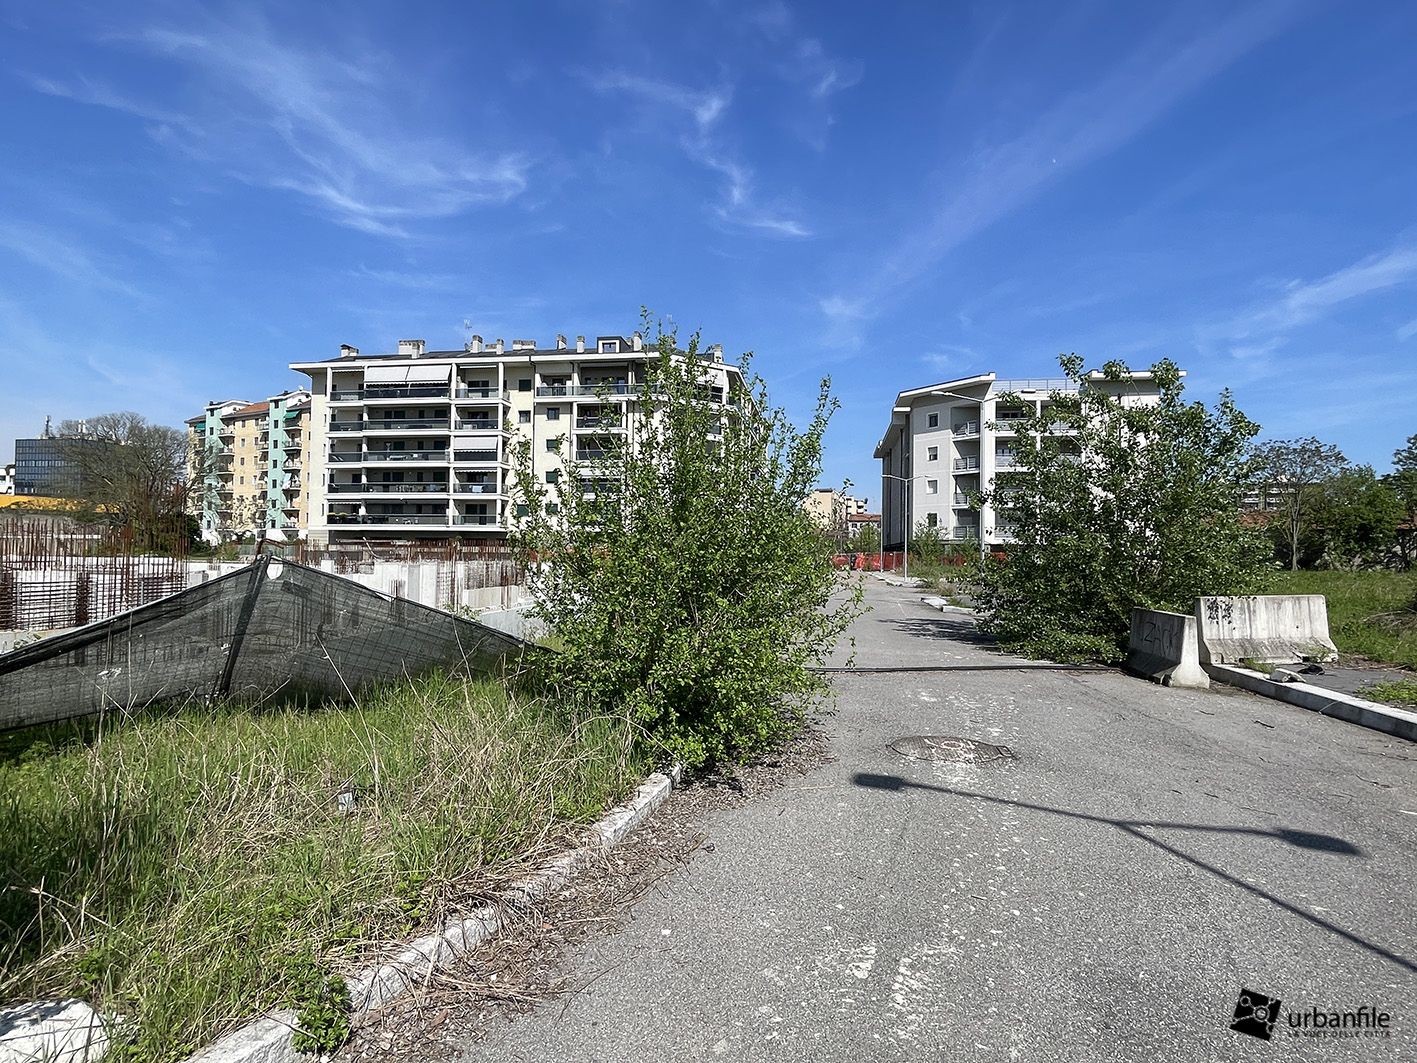 Milano | Vigentino – A bando quattro aree comunali, almeno il 50% delle nuove edificazioni destinato a edilizia residenziale sociale